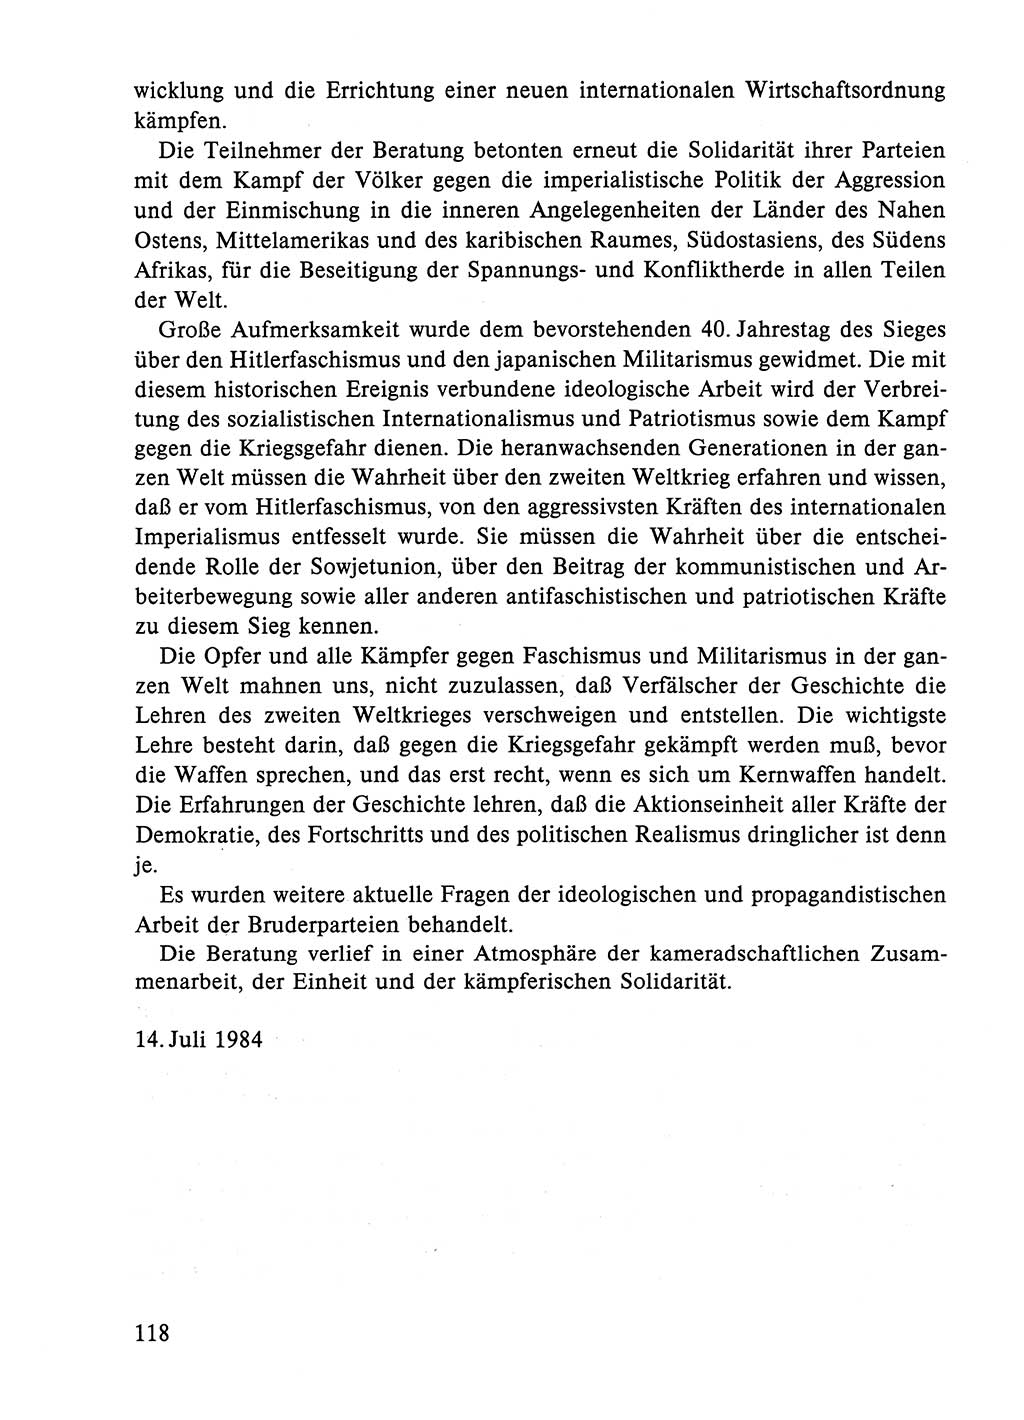 Dokumente der Sozialistischen Einheitspartei Deutschlands (SED) [Deutsche Demokratische Republik (DDR)] 1984-1985, Seite 309 (Dok. SED DDR 1984-1985, S. 309)